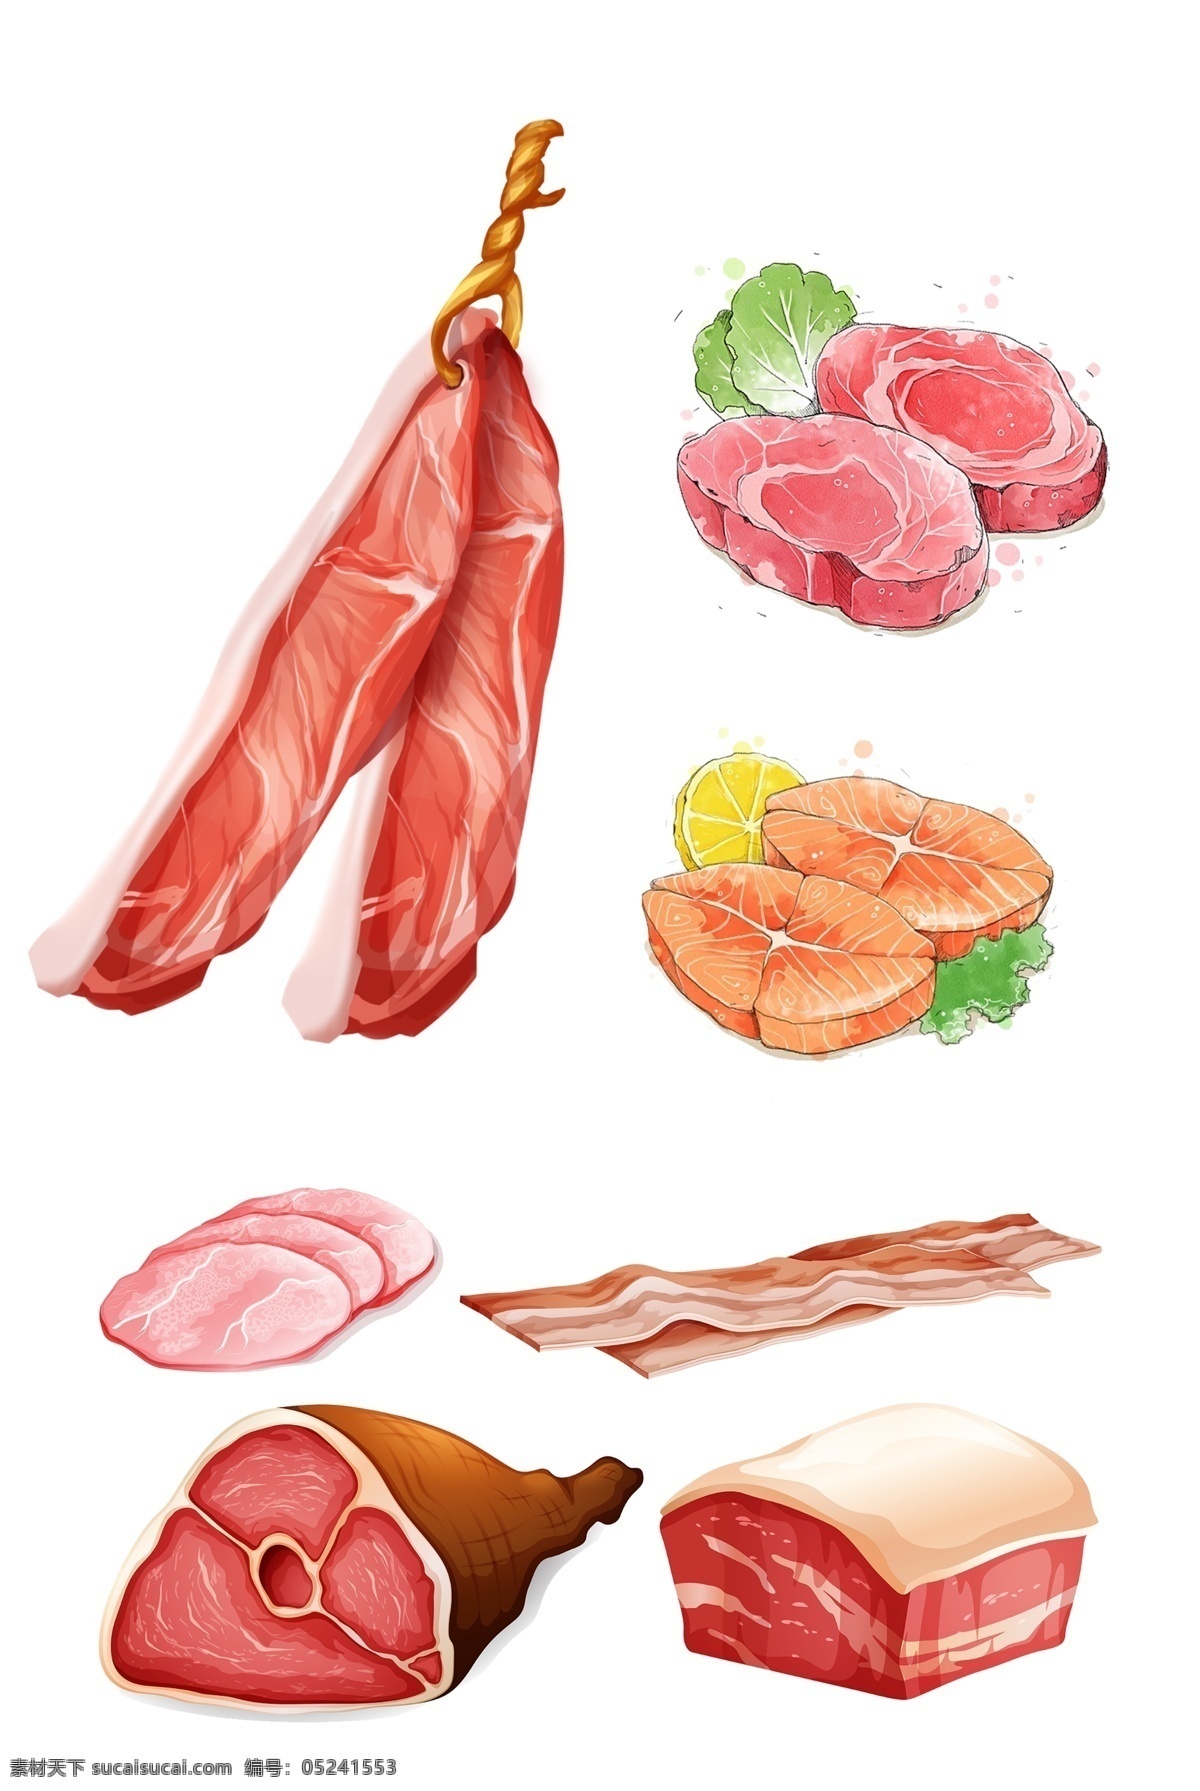 手绘肉 手绘腊肉 手绘鱼肉 水彩肉 水彩腊肉 水彩瘦肉 手绘瘦肉 鱼肉 腊肉 猪肉 肉食素材 水彩手绘